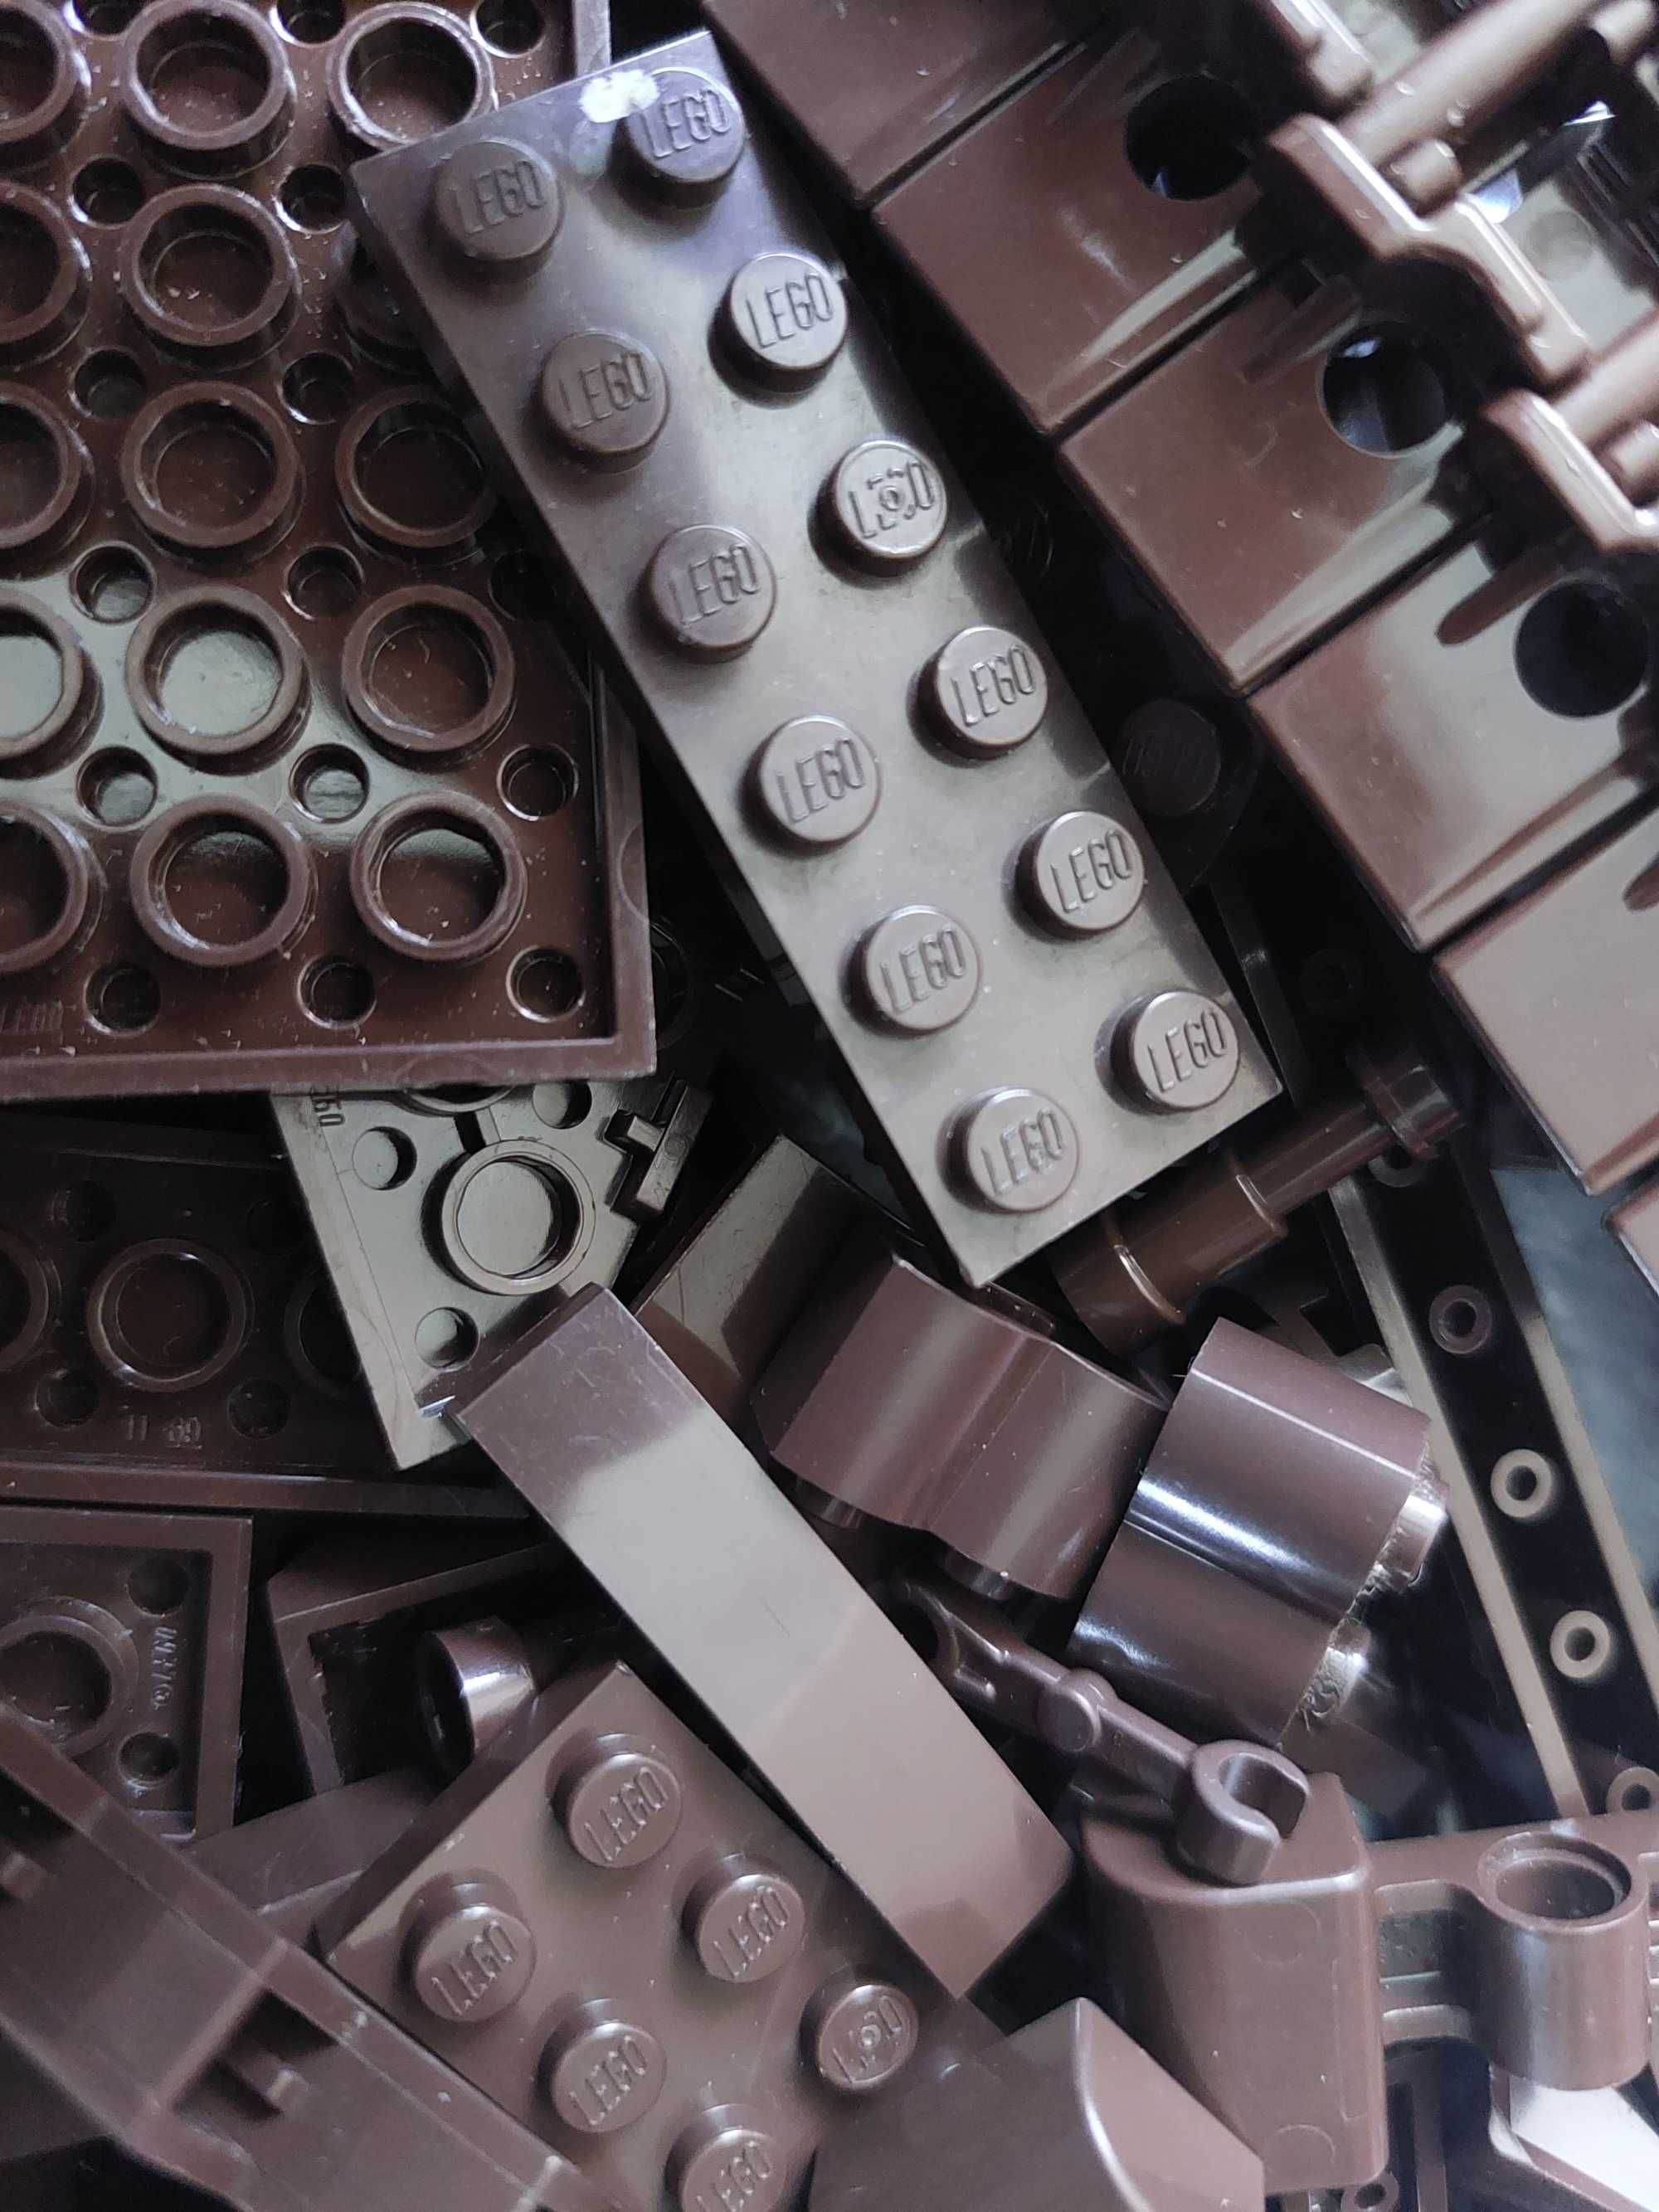 Klocki Lego Ciemny Brąz sortowane Orygonalne 370g